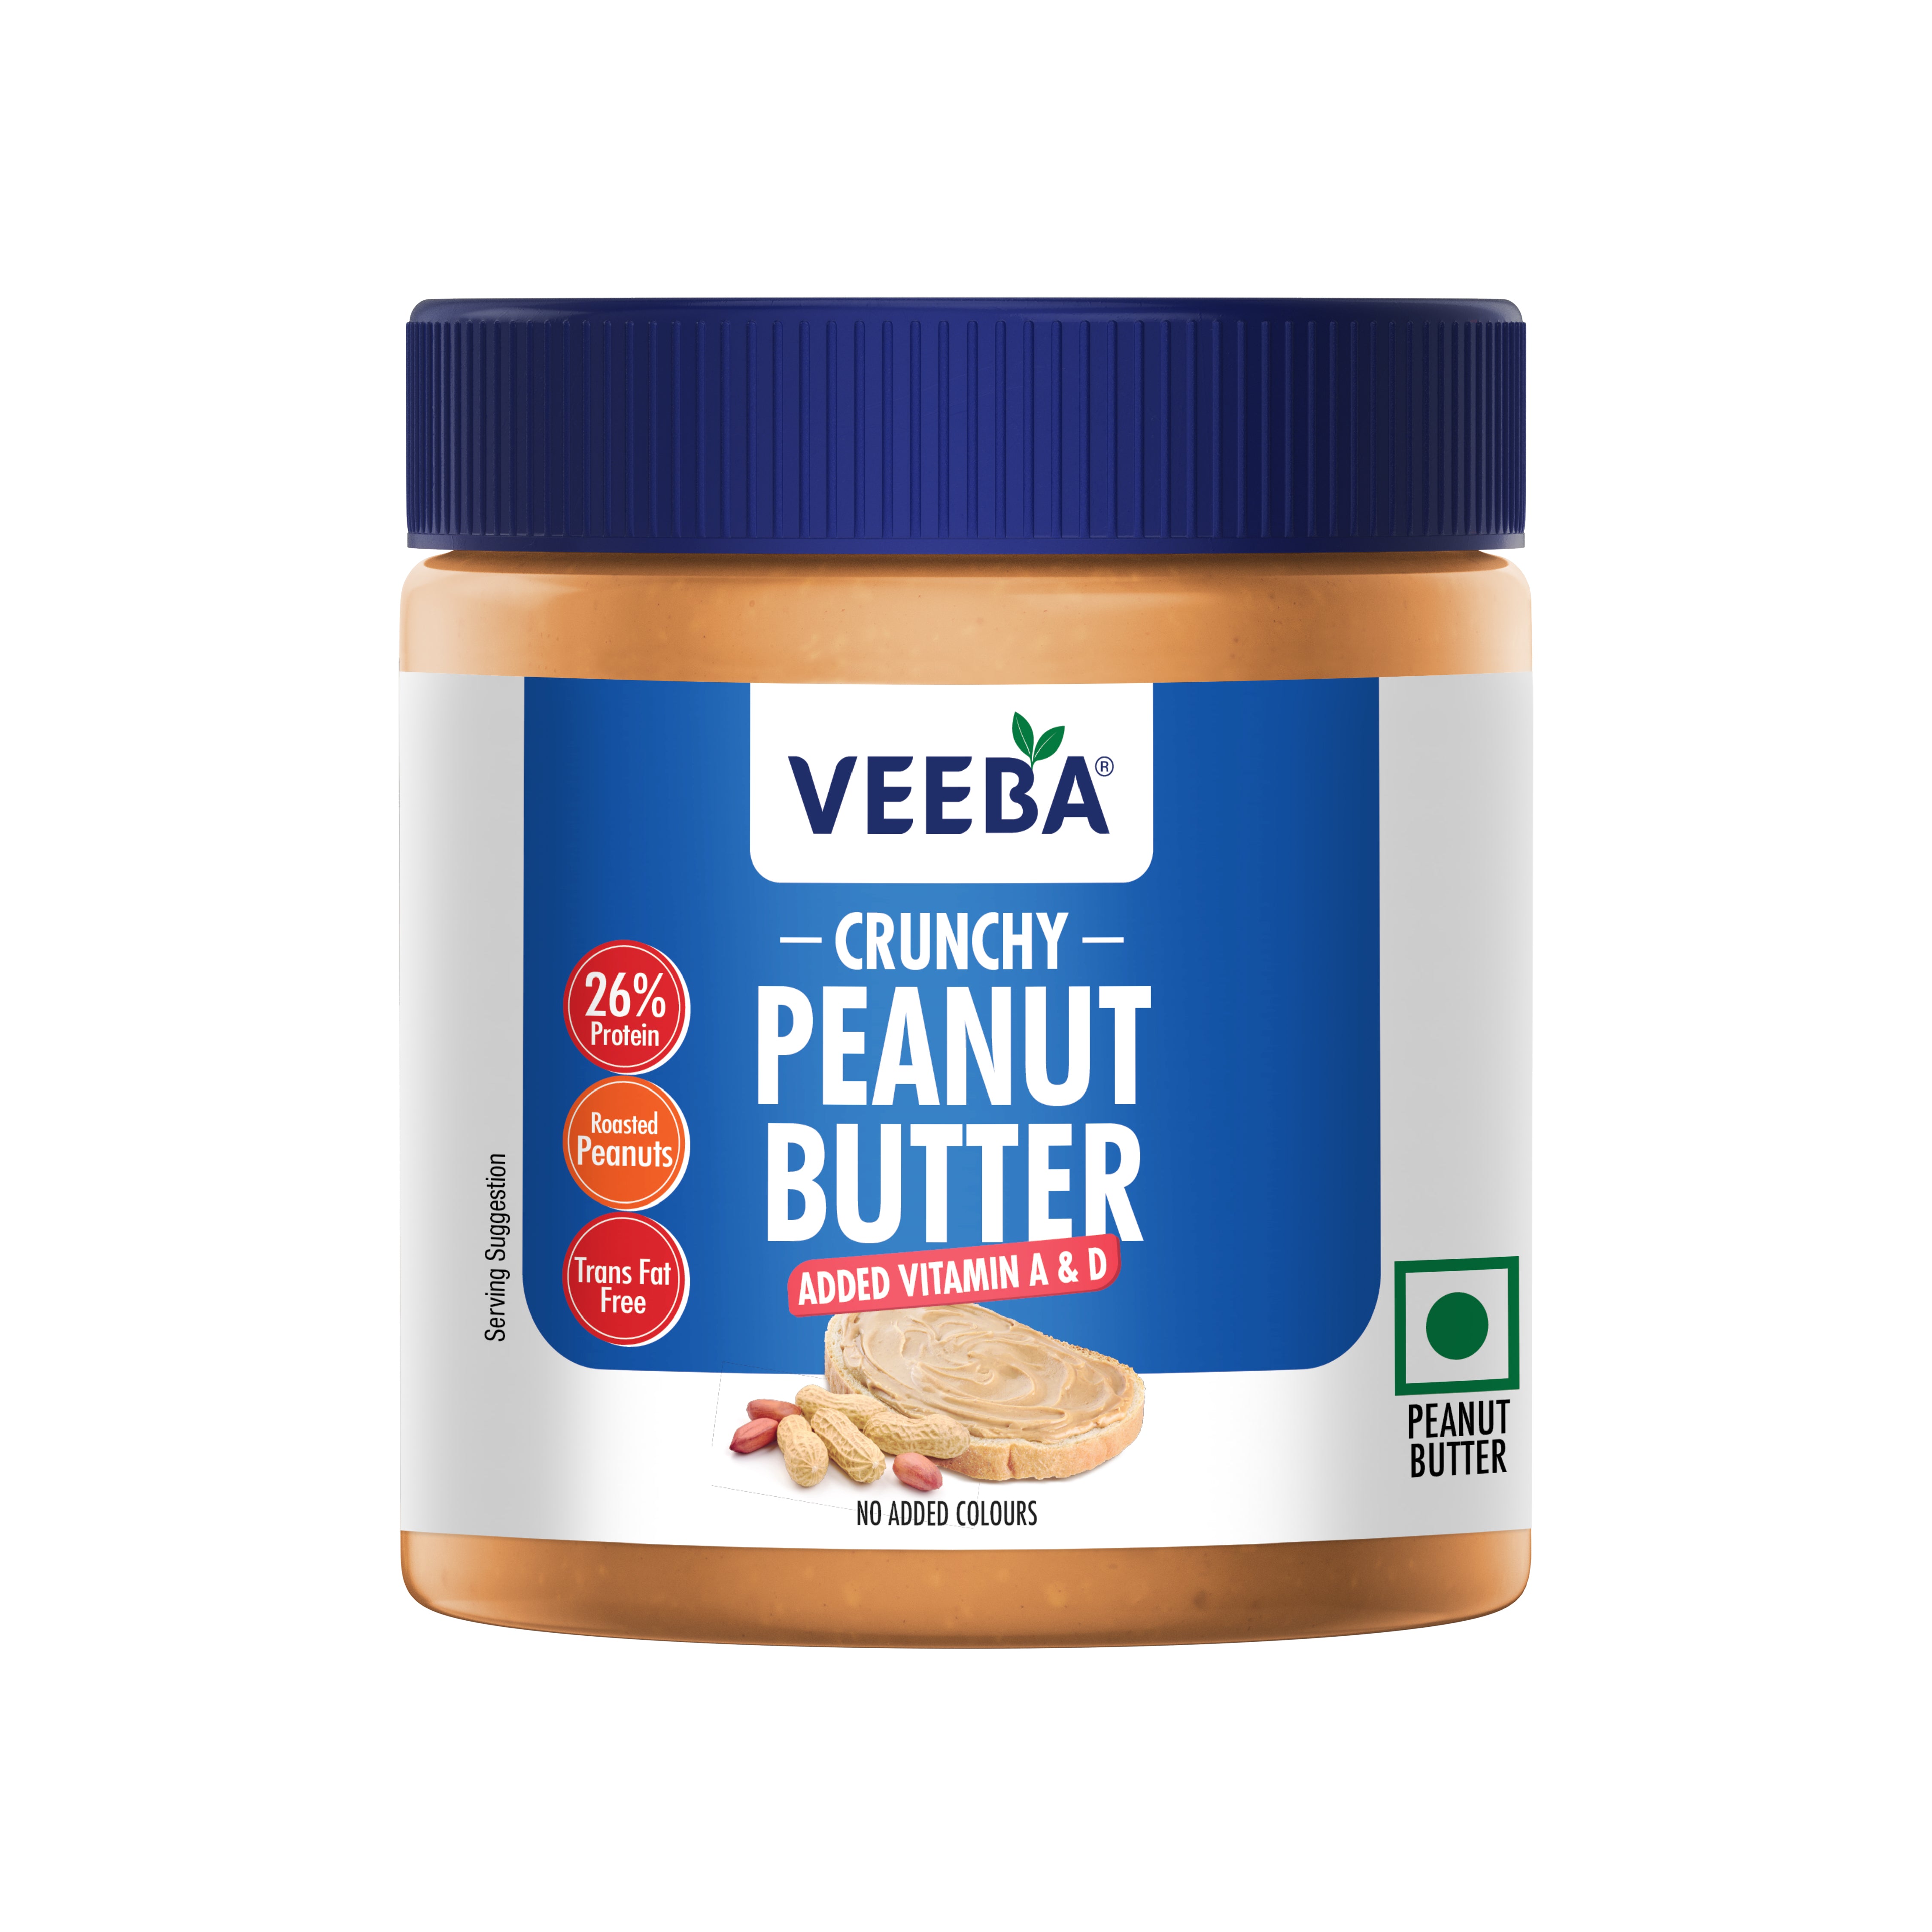 Crunchy Peanut Butter added Vitamin A & D (340 g)